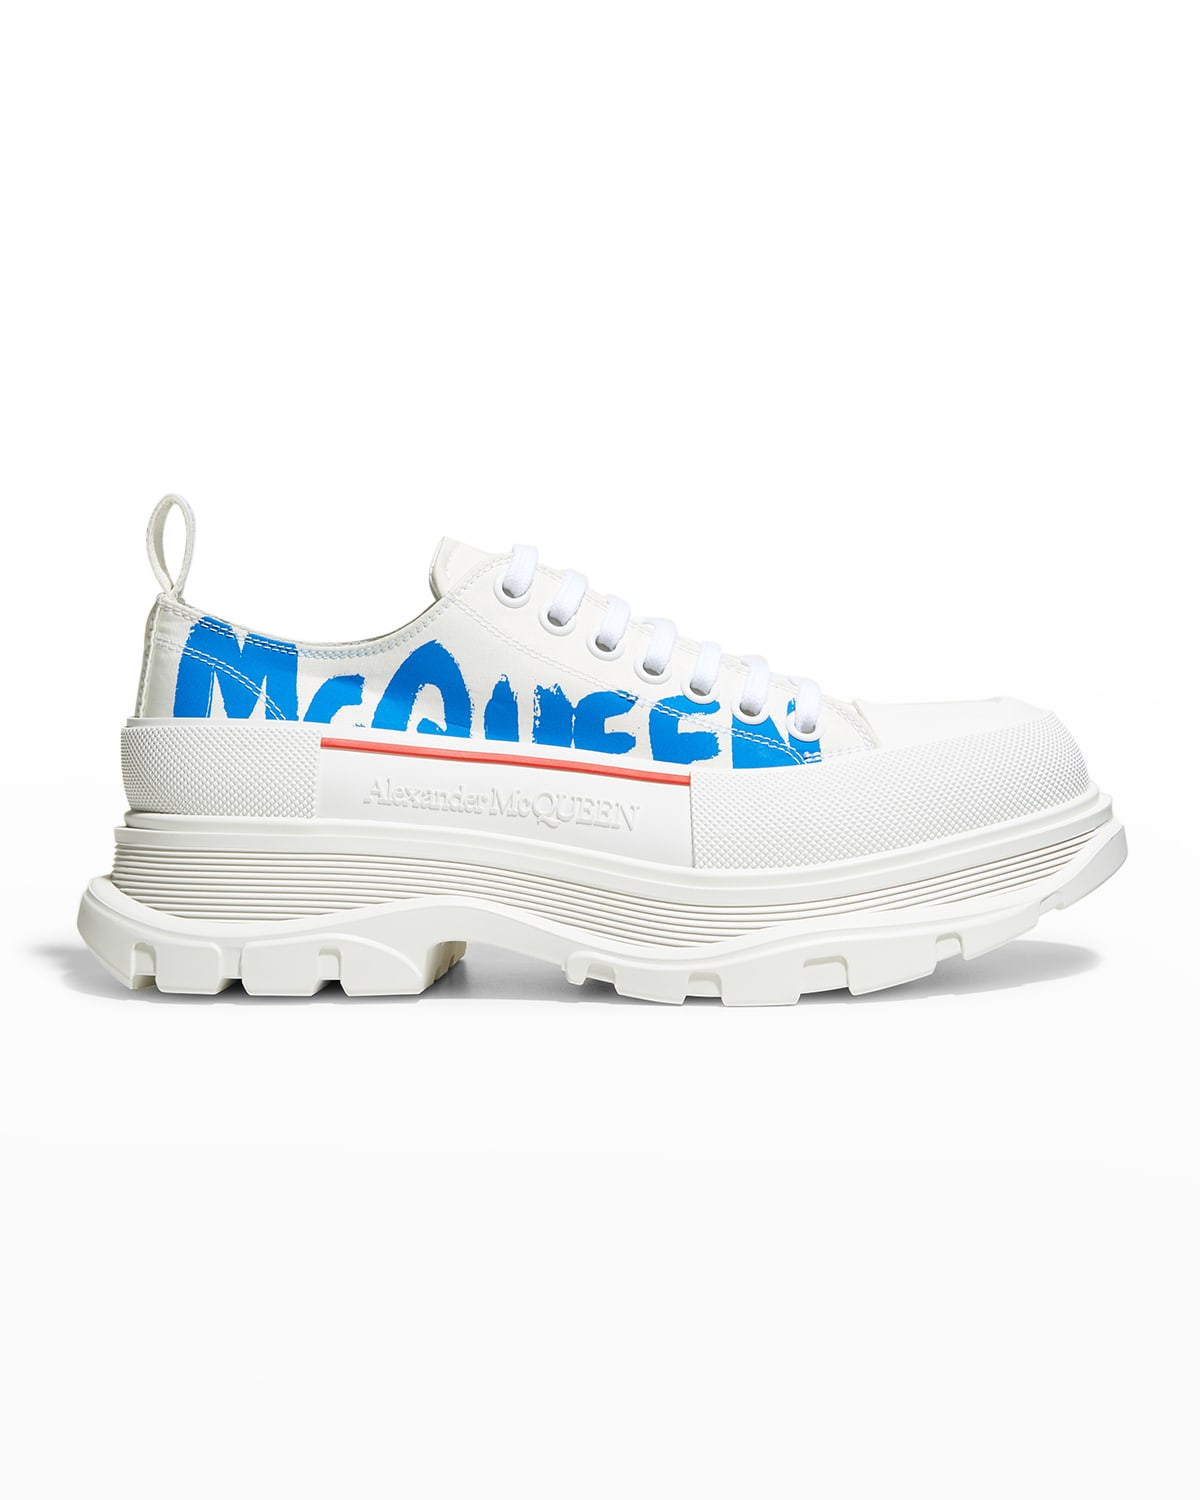 Alexander McQueen Men's Treadslick Logo Canvas Low-Top Sneakers